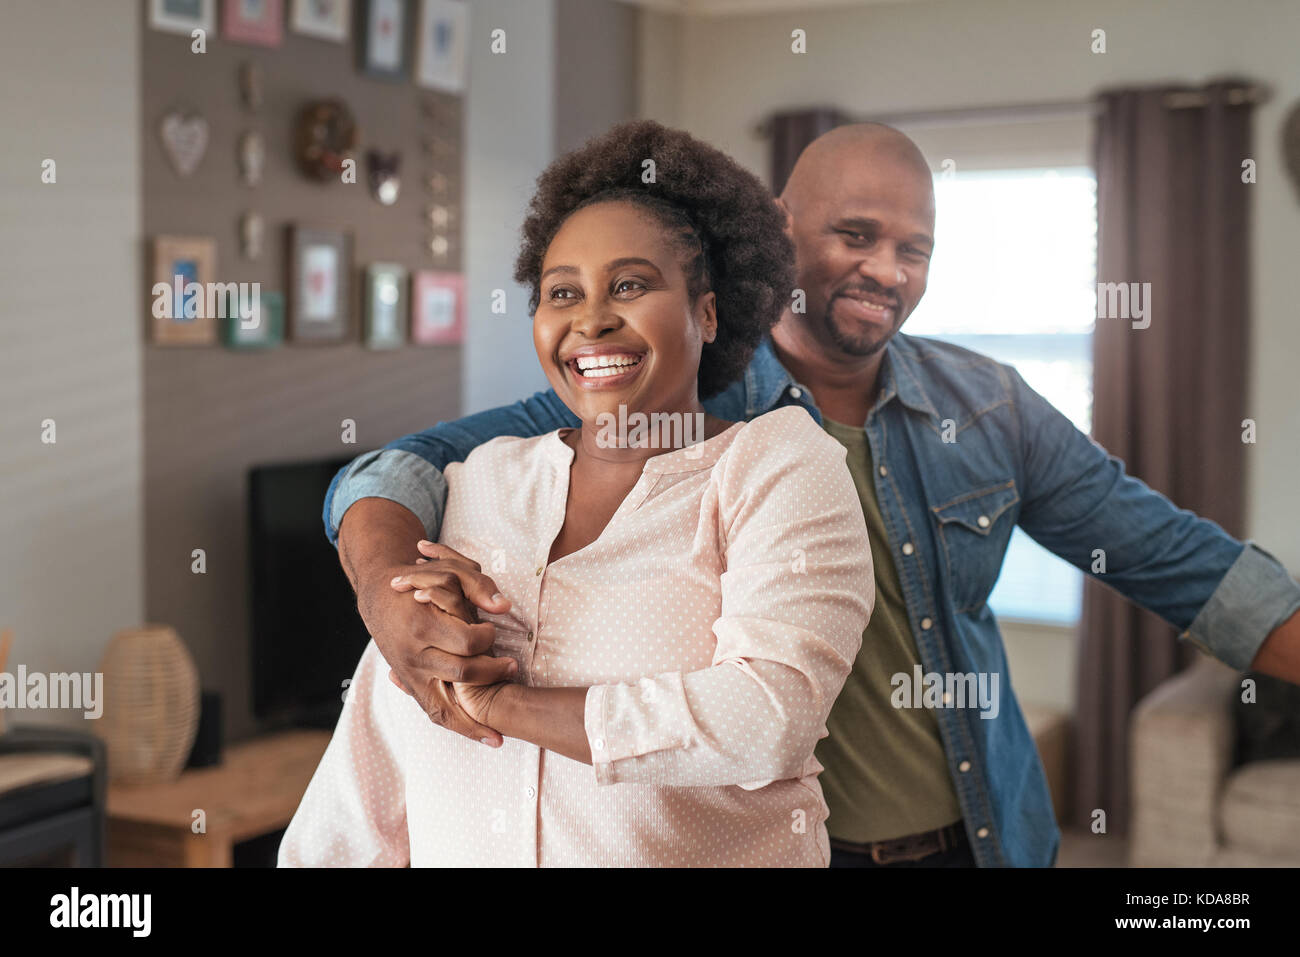 Lachend afrikanischen paar spielerische Moment miteinander geniessen zu Hause Stockfoto